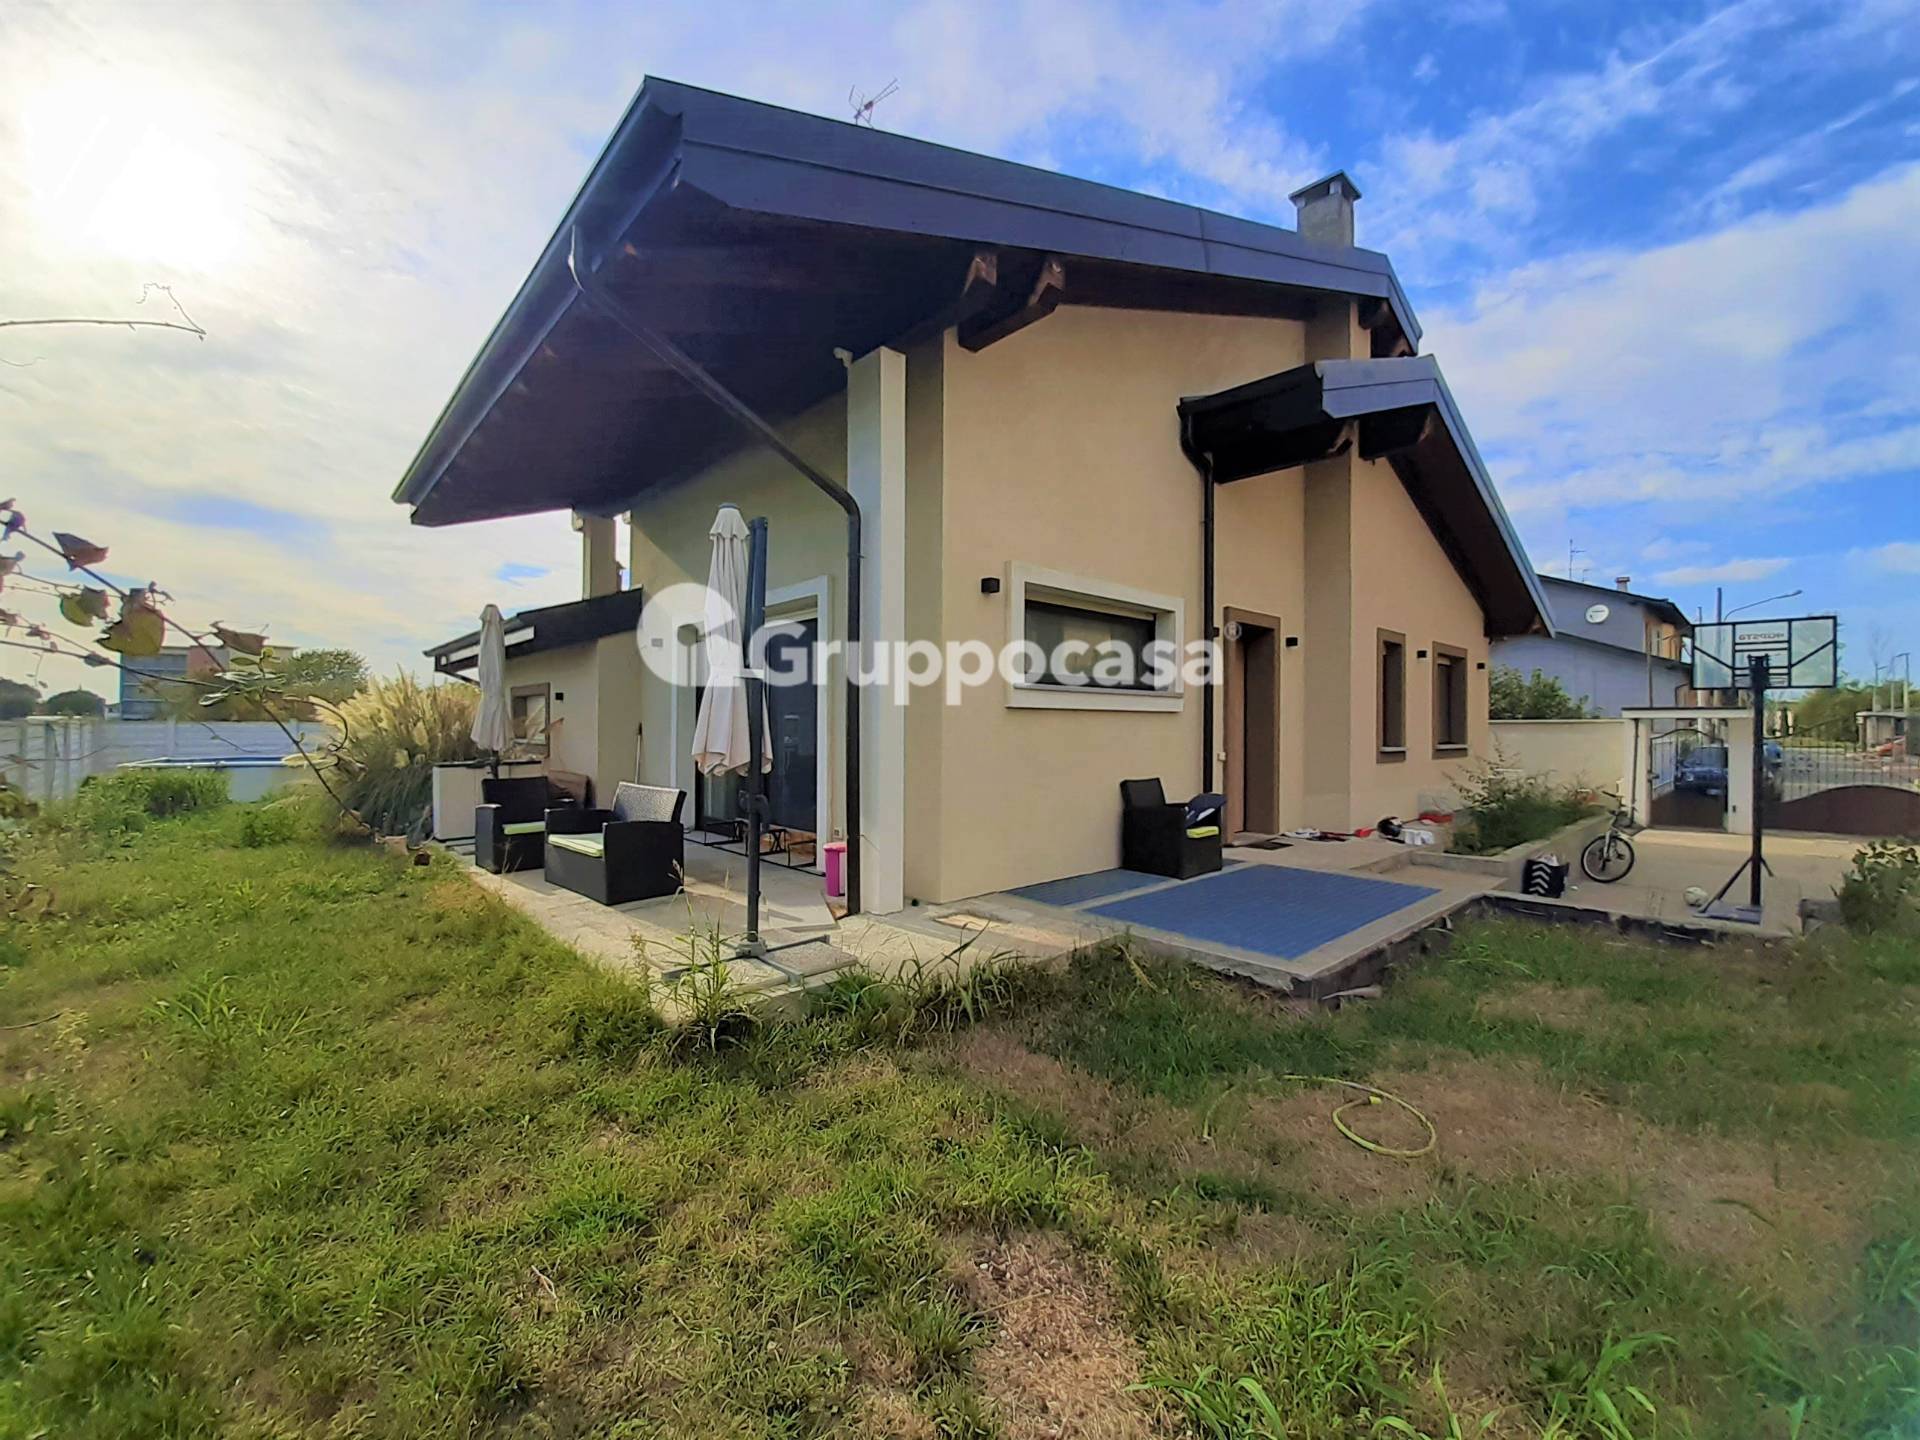 Villa in vendita a Magenta, 4 locali, prezzo € 550.000 | PortaleAgenzieImmobiliari.it